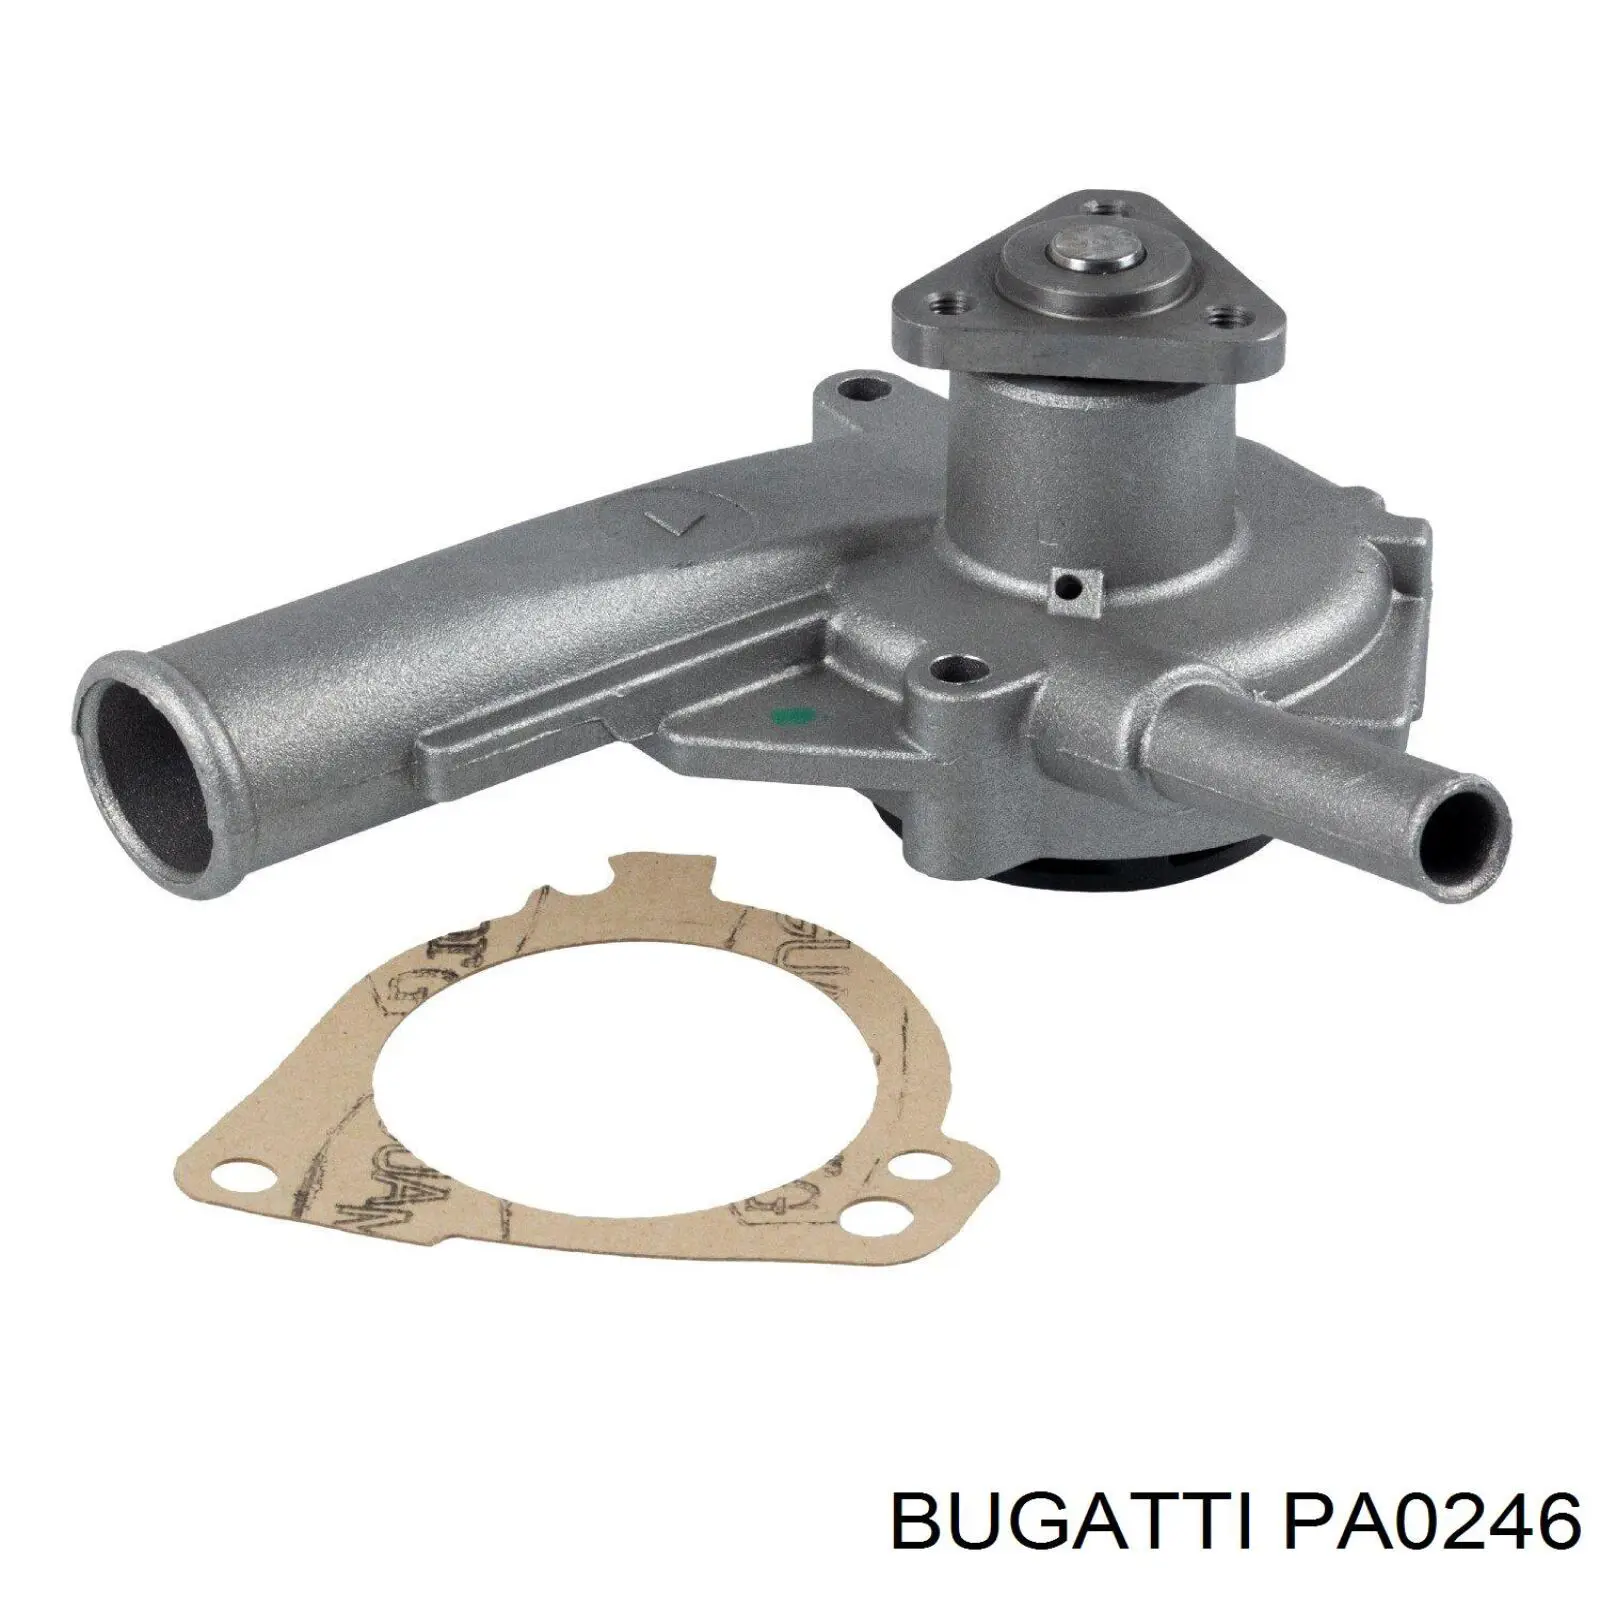 PA0246 Bugatti bomba de agua